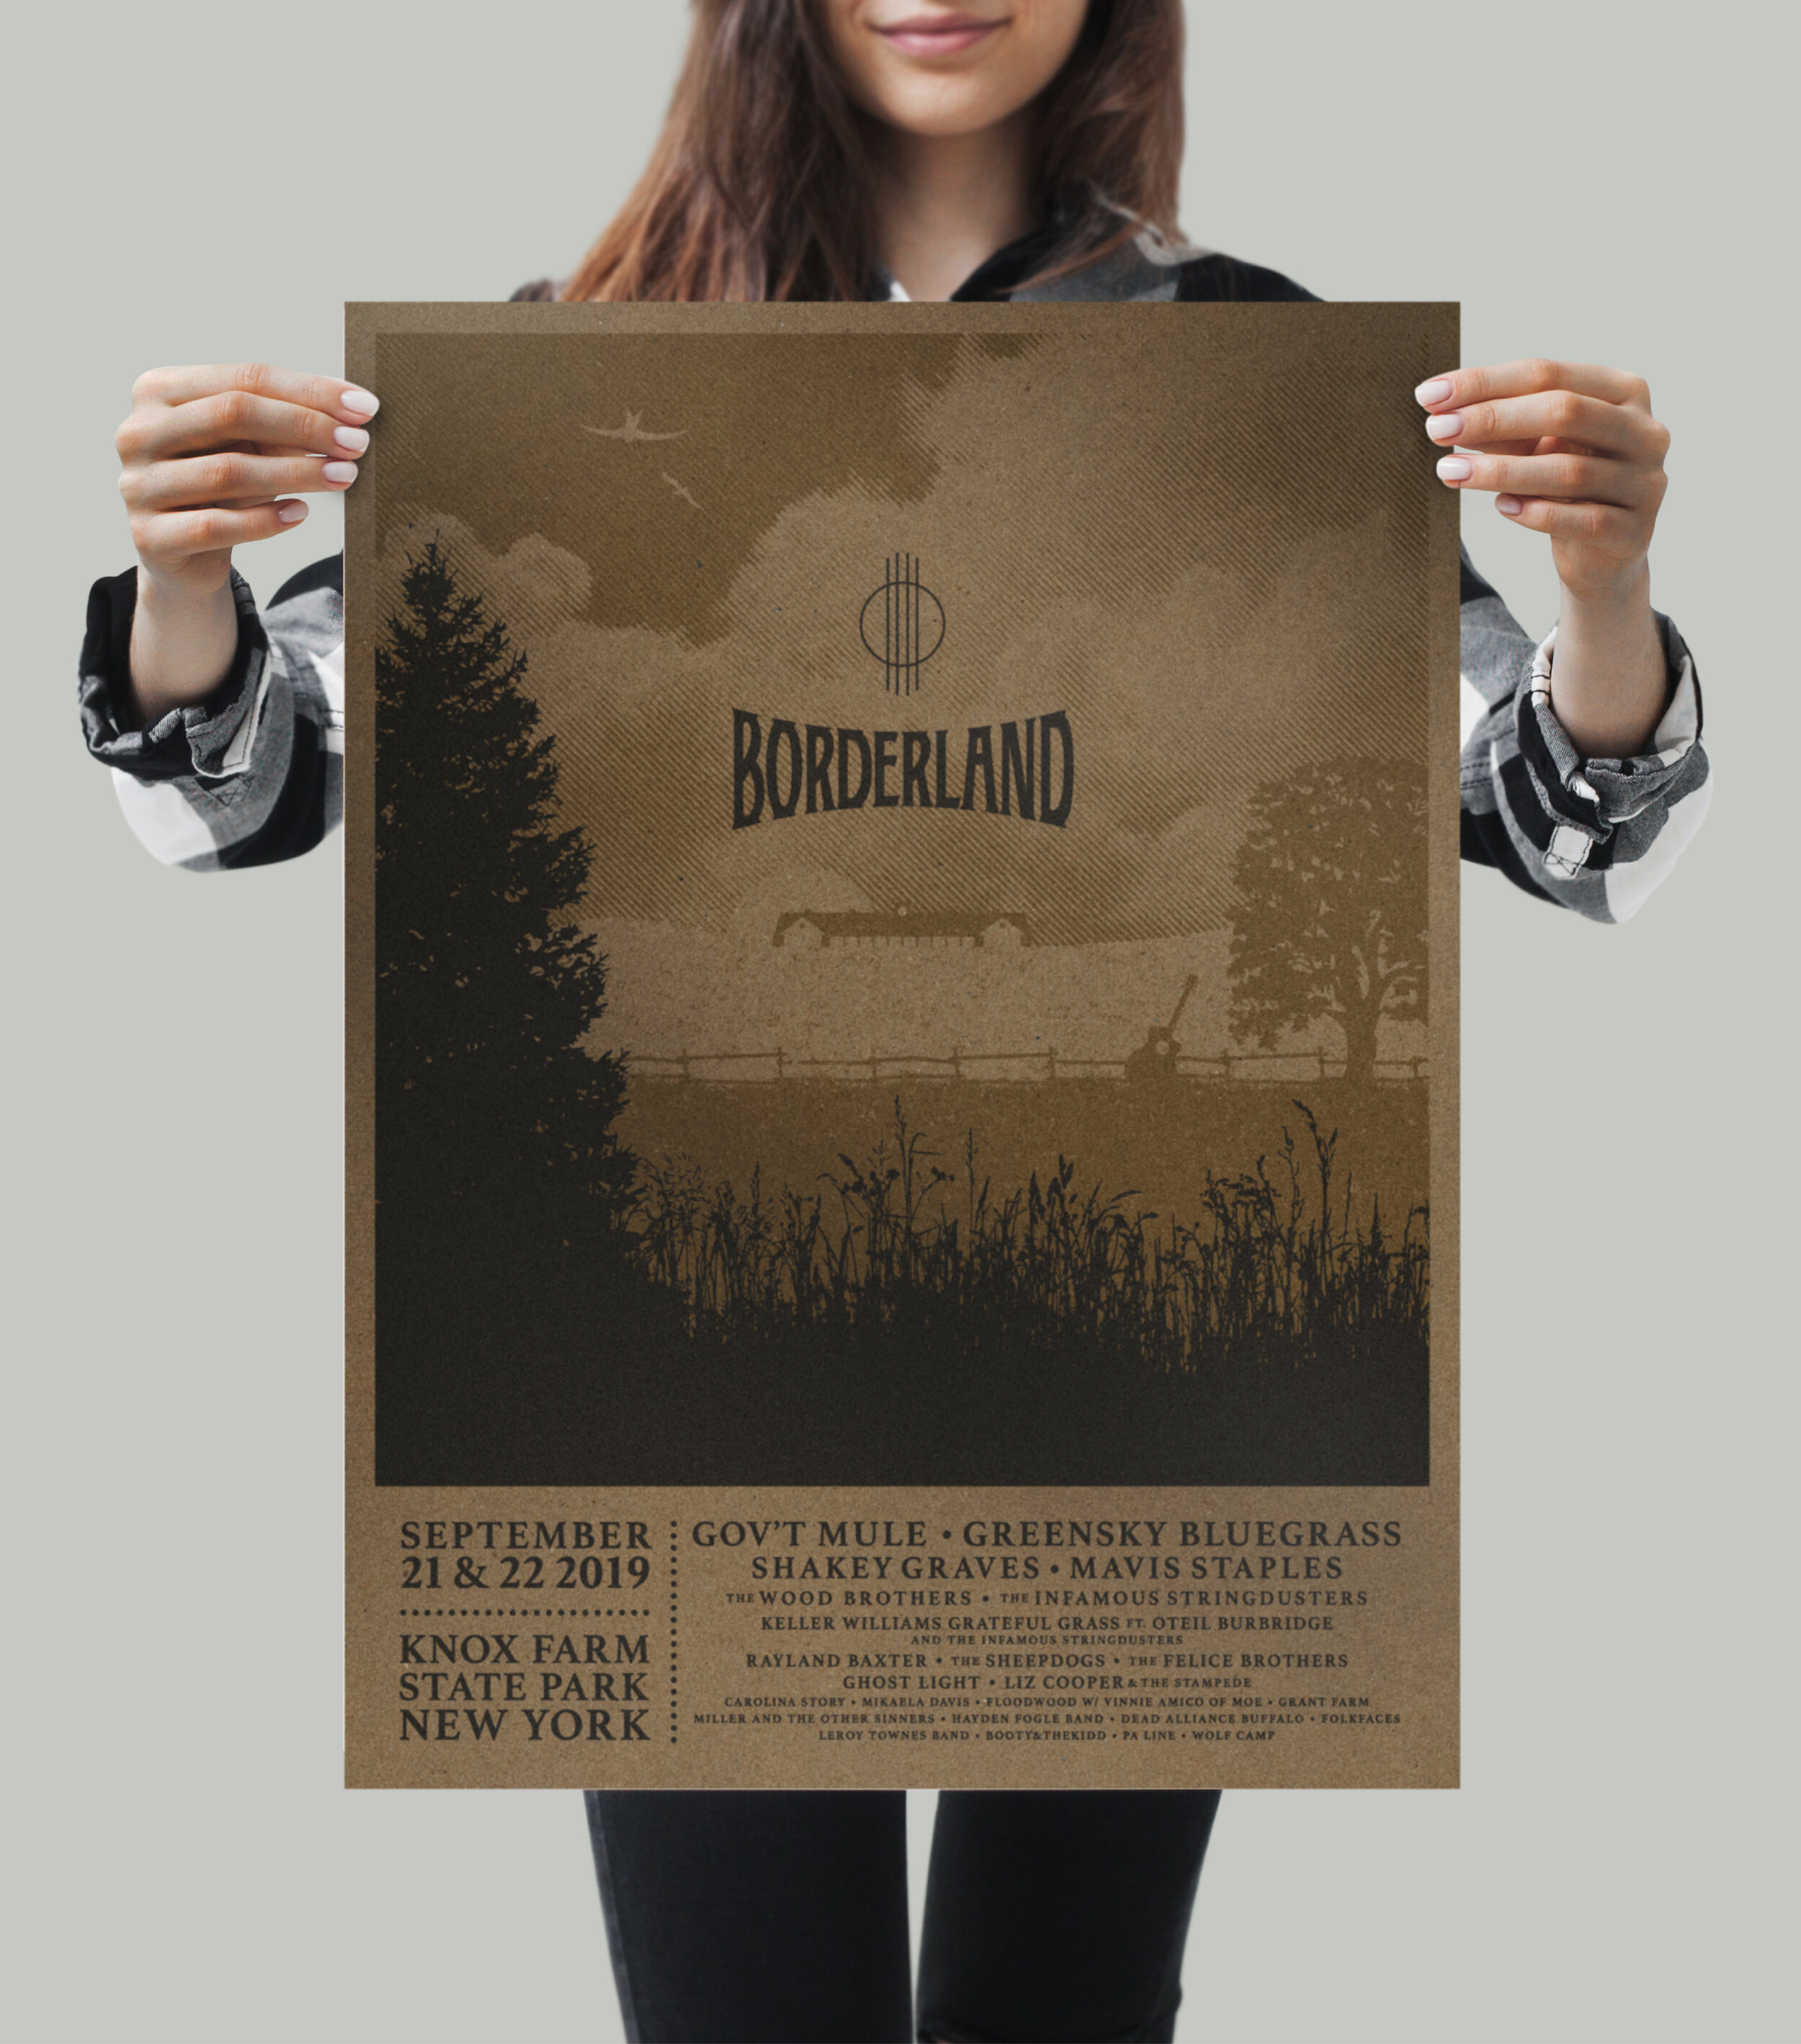 Borderland 2019 Festival Art Direction